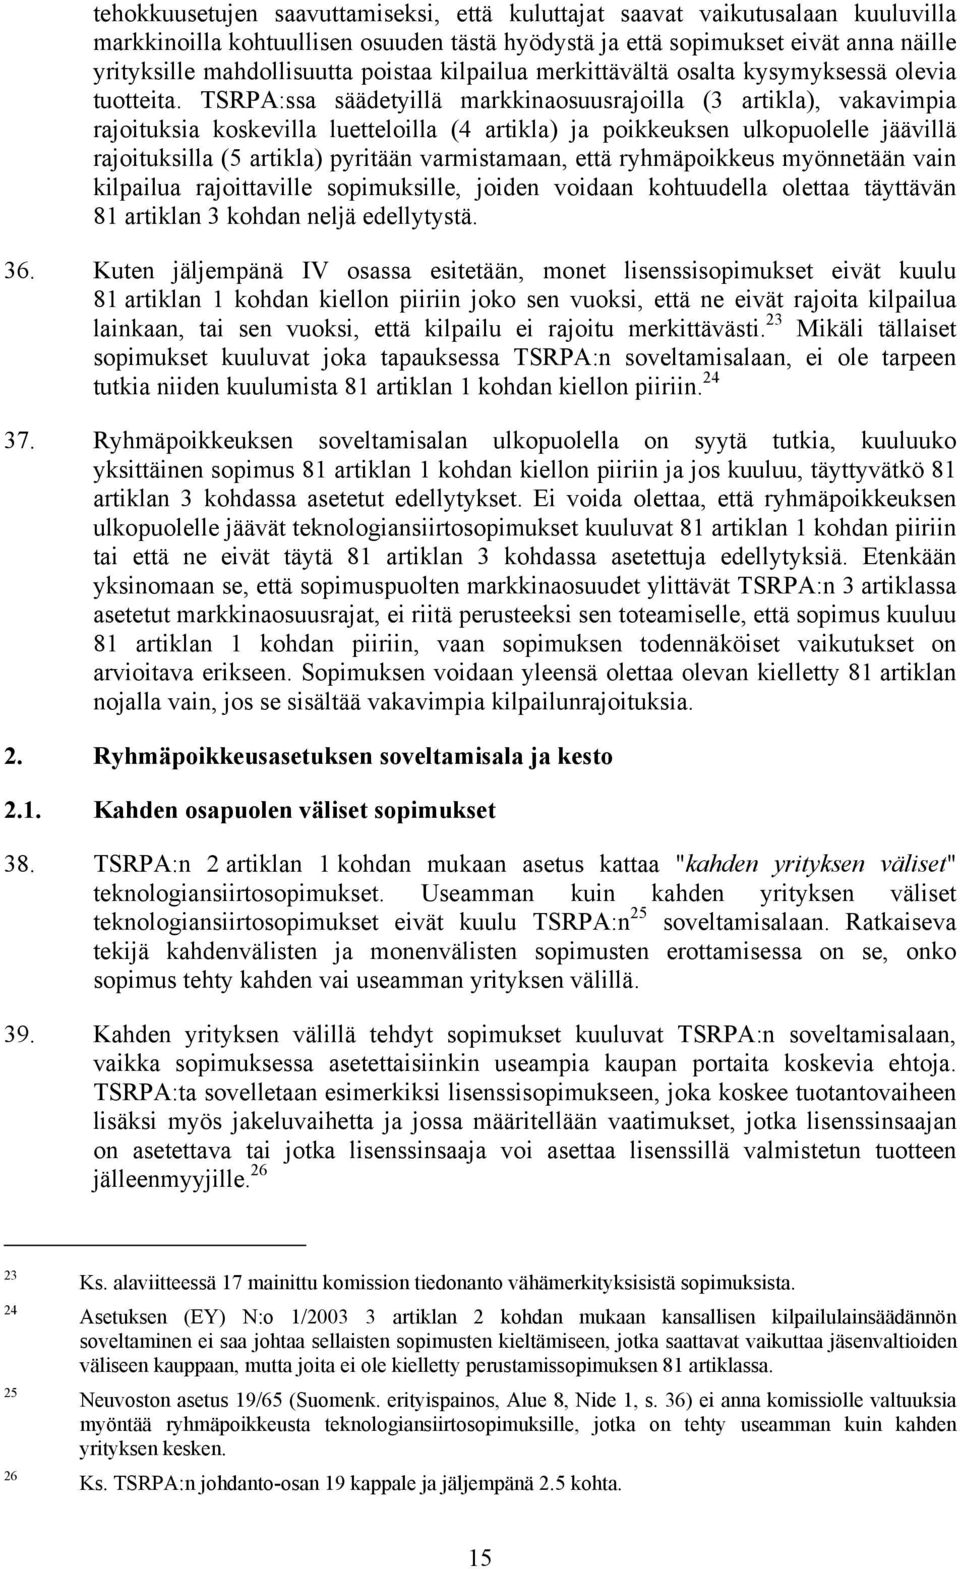 TSRPA:ssa säädetyillä markkinaosuusrajoilla (3 artikla), vakavimpia rajoituksia koskevilla luetteloilla (4 artikla) ja poikkeuksen ulkopuolelle jäävillä rajoituksilla (5 artikla) pyritään